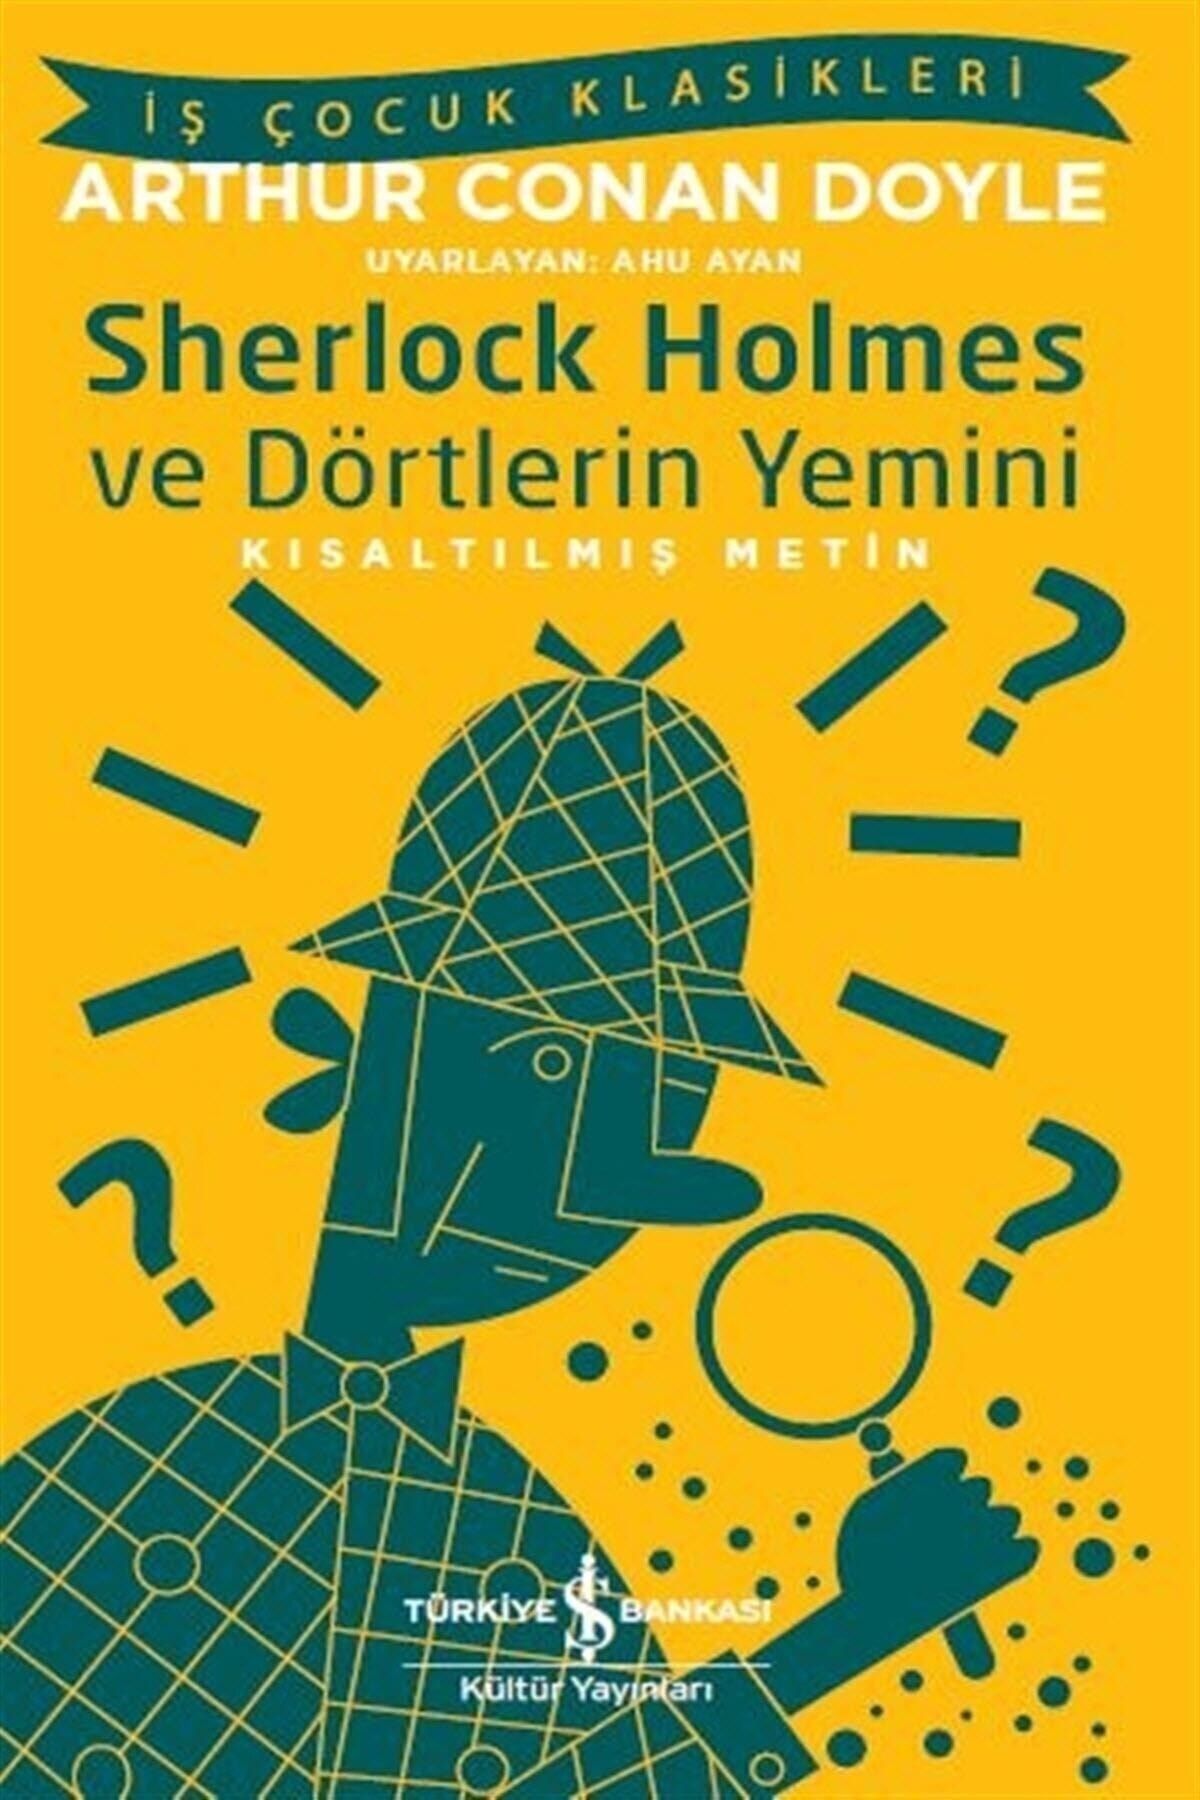 Türkiye İş Bankası Kültür Yayınları Sherlock Holmes Ve Dörtlerin Yemini Iş Çocuk Klasikleri Kısaltılmış Metin